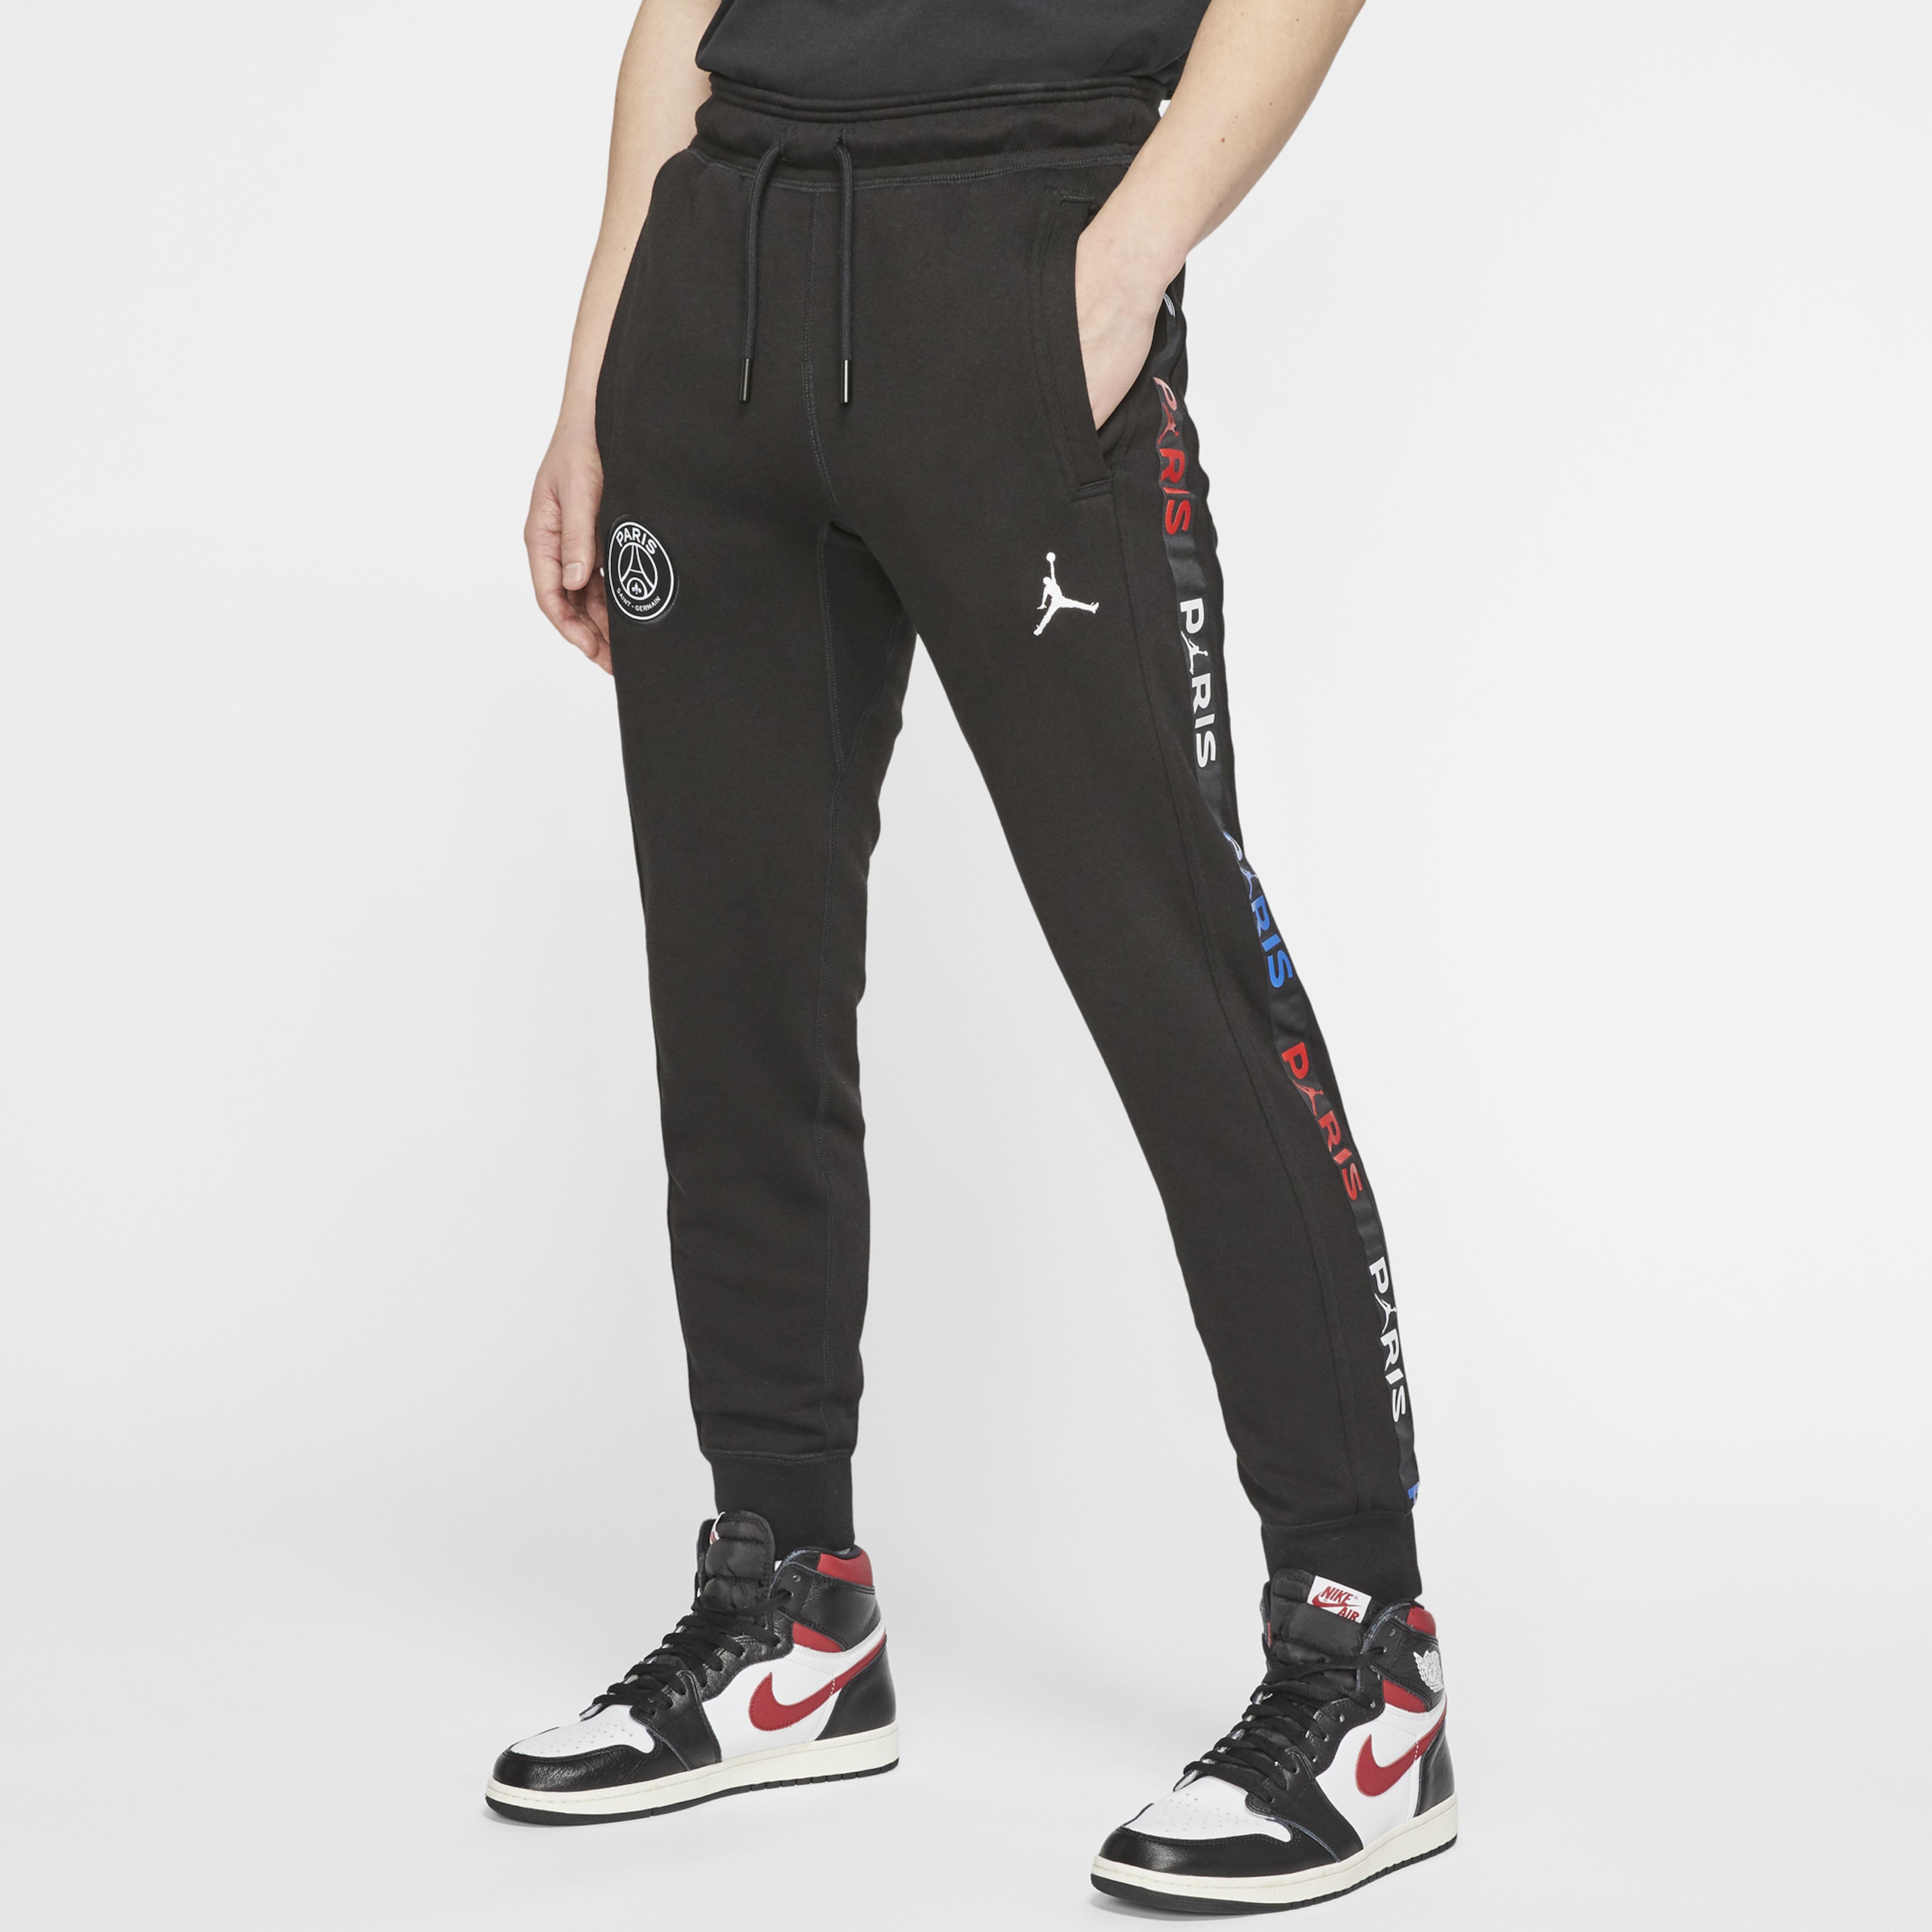 Nike Jordan Paris Saint-germain Fleece Pants in Black for Men - Lyst